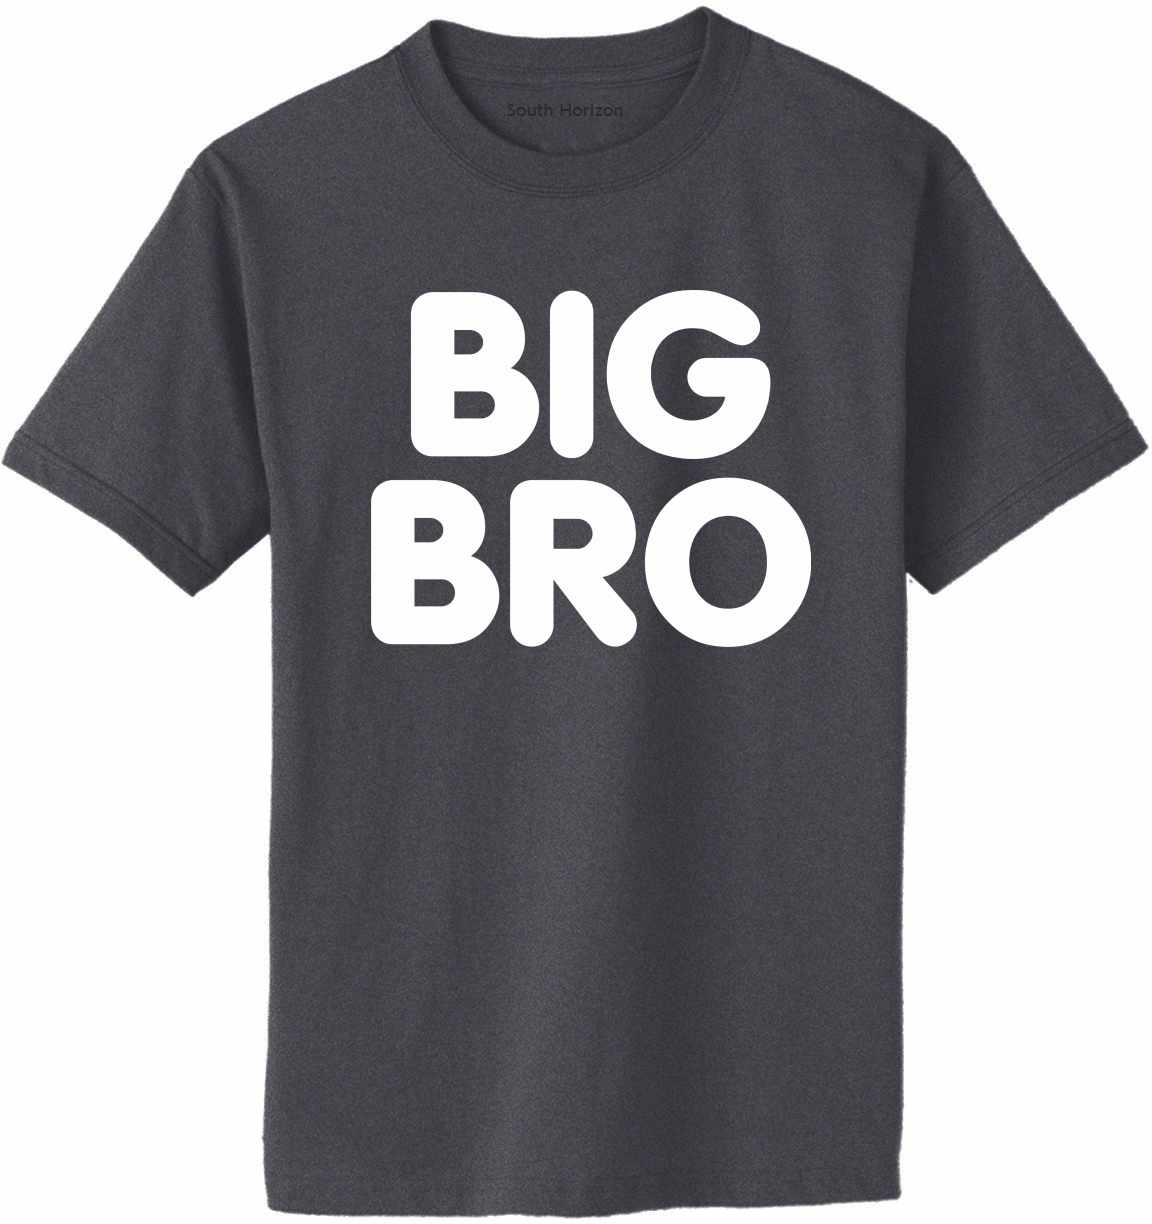 BIG BRO on Adult T-Shirt (#951-1)